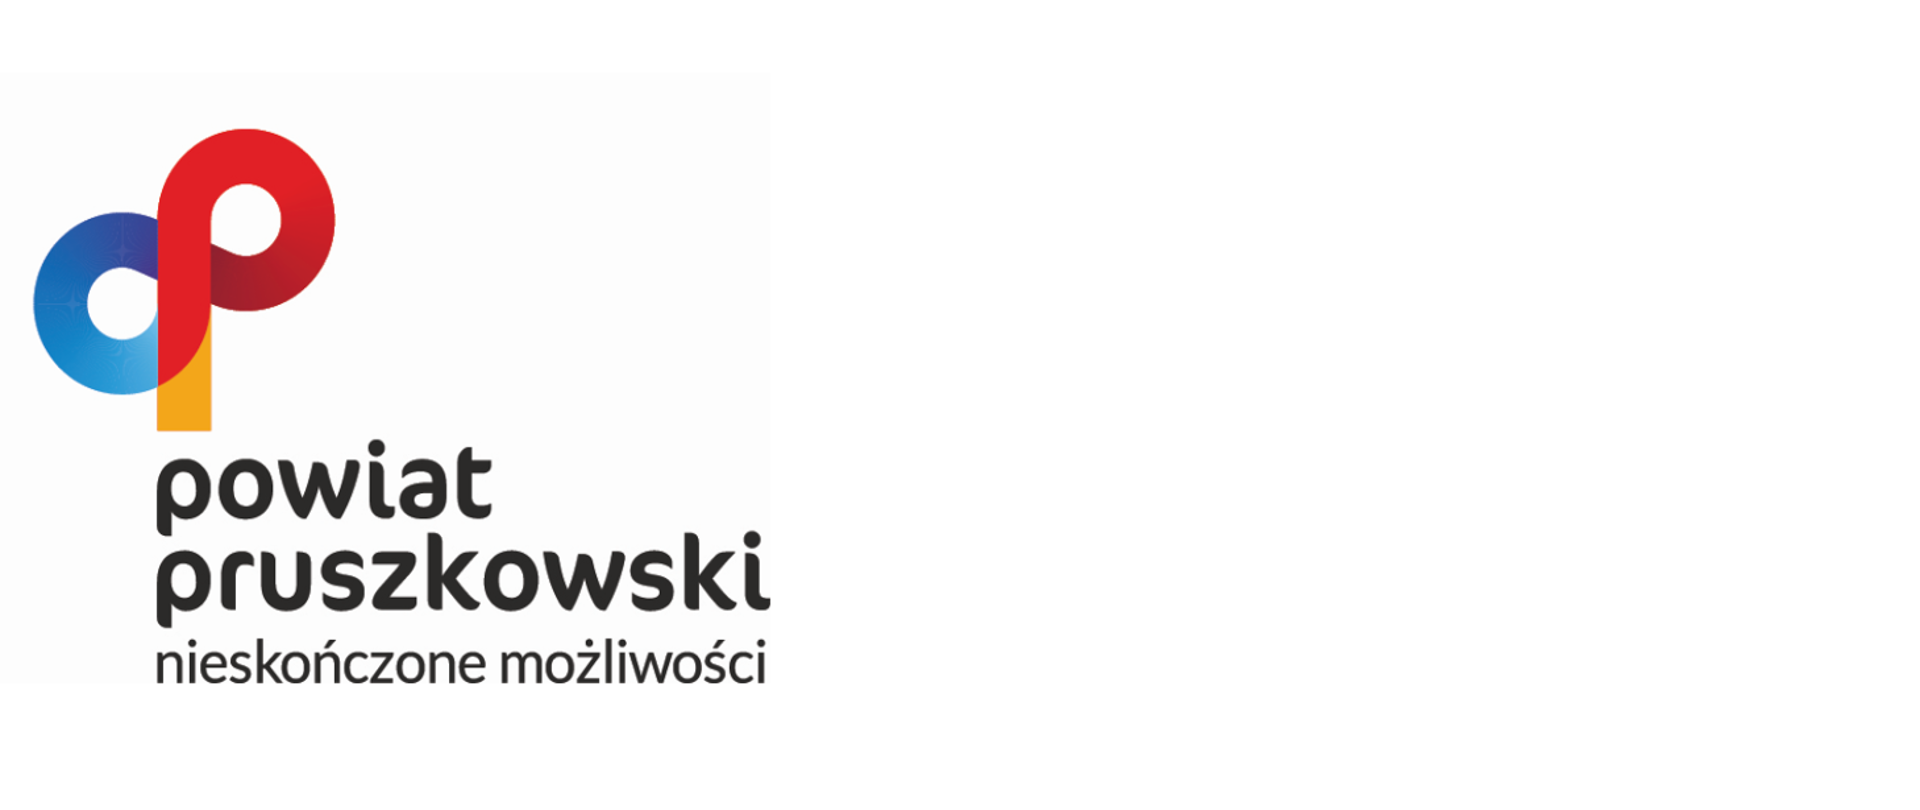 logo powiatu pruszkowskiego napis powiat pruszkowski nieskończone możliwości i kolorowe dwie litery p 